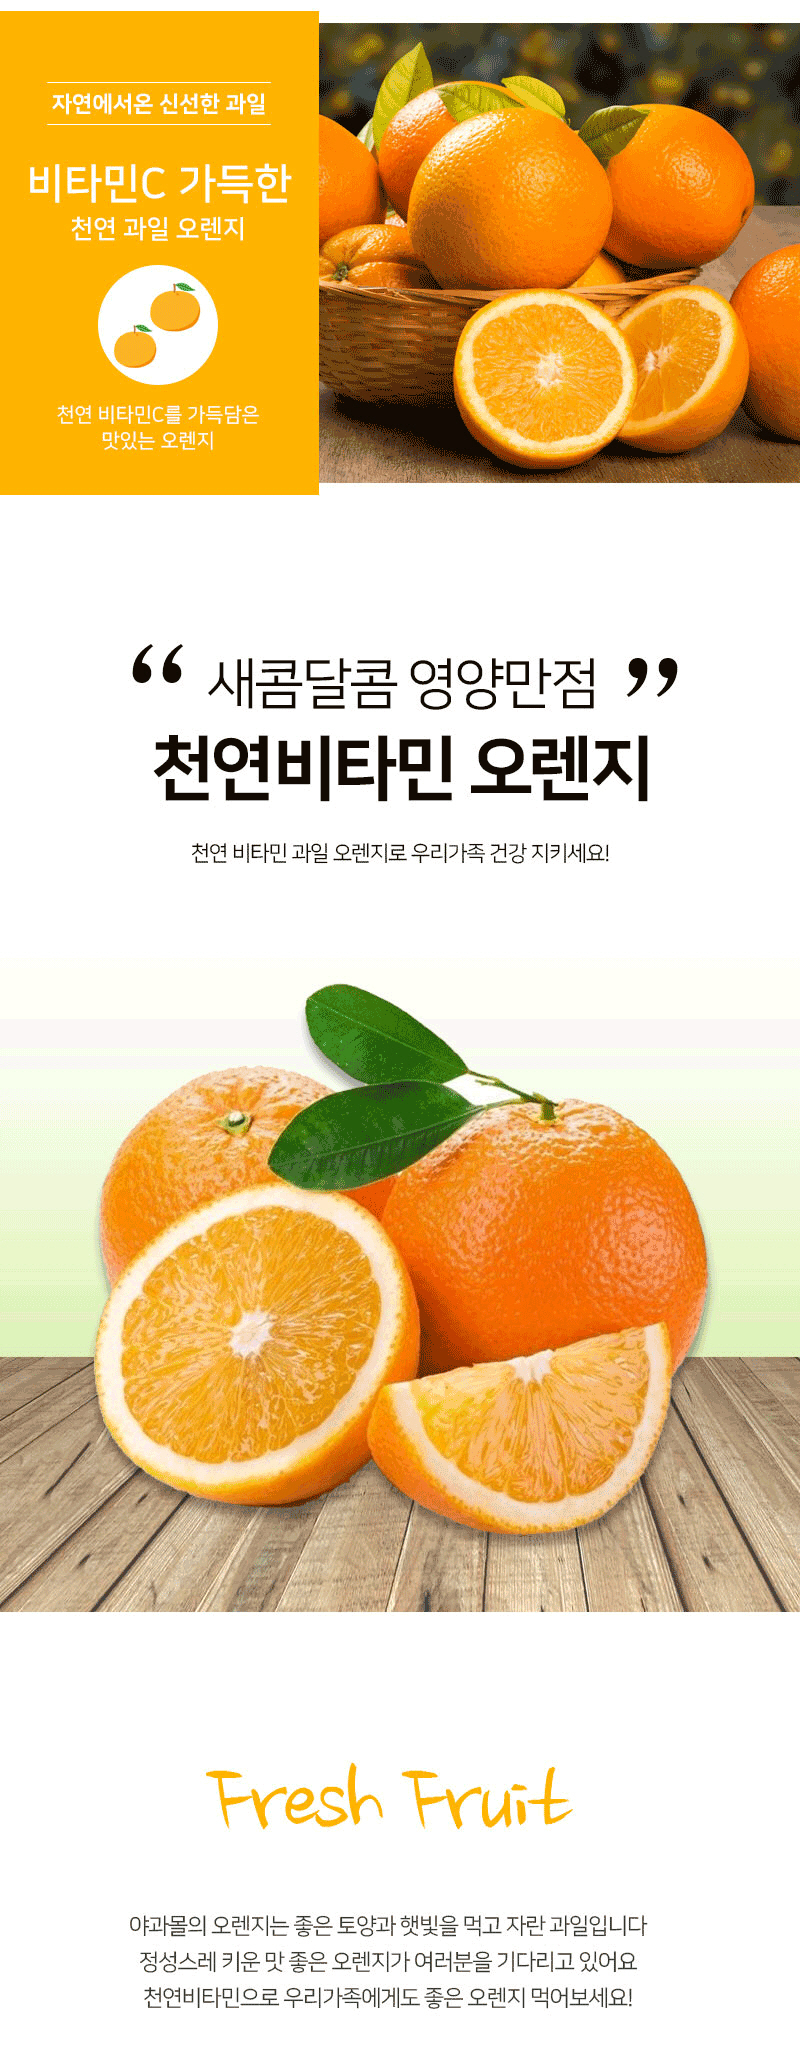 Gmarket - 야과몰 비타민C 가득한 천연 과일 오렌지 (소) 5Kg